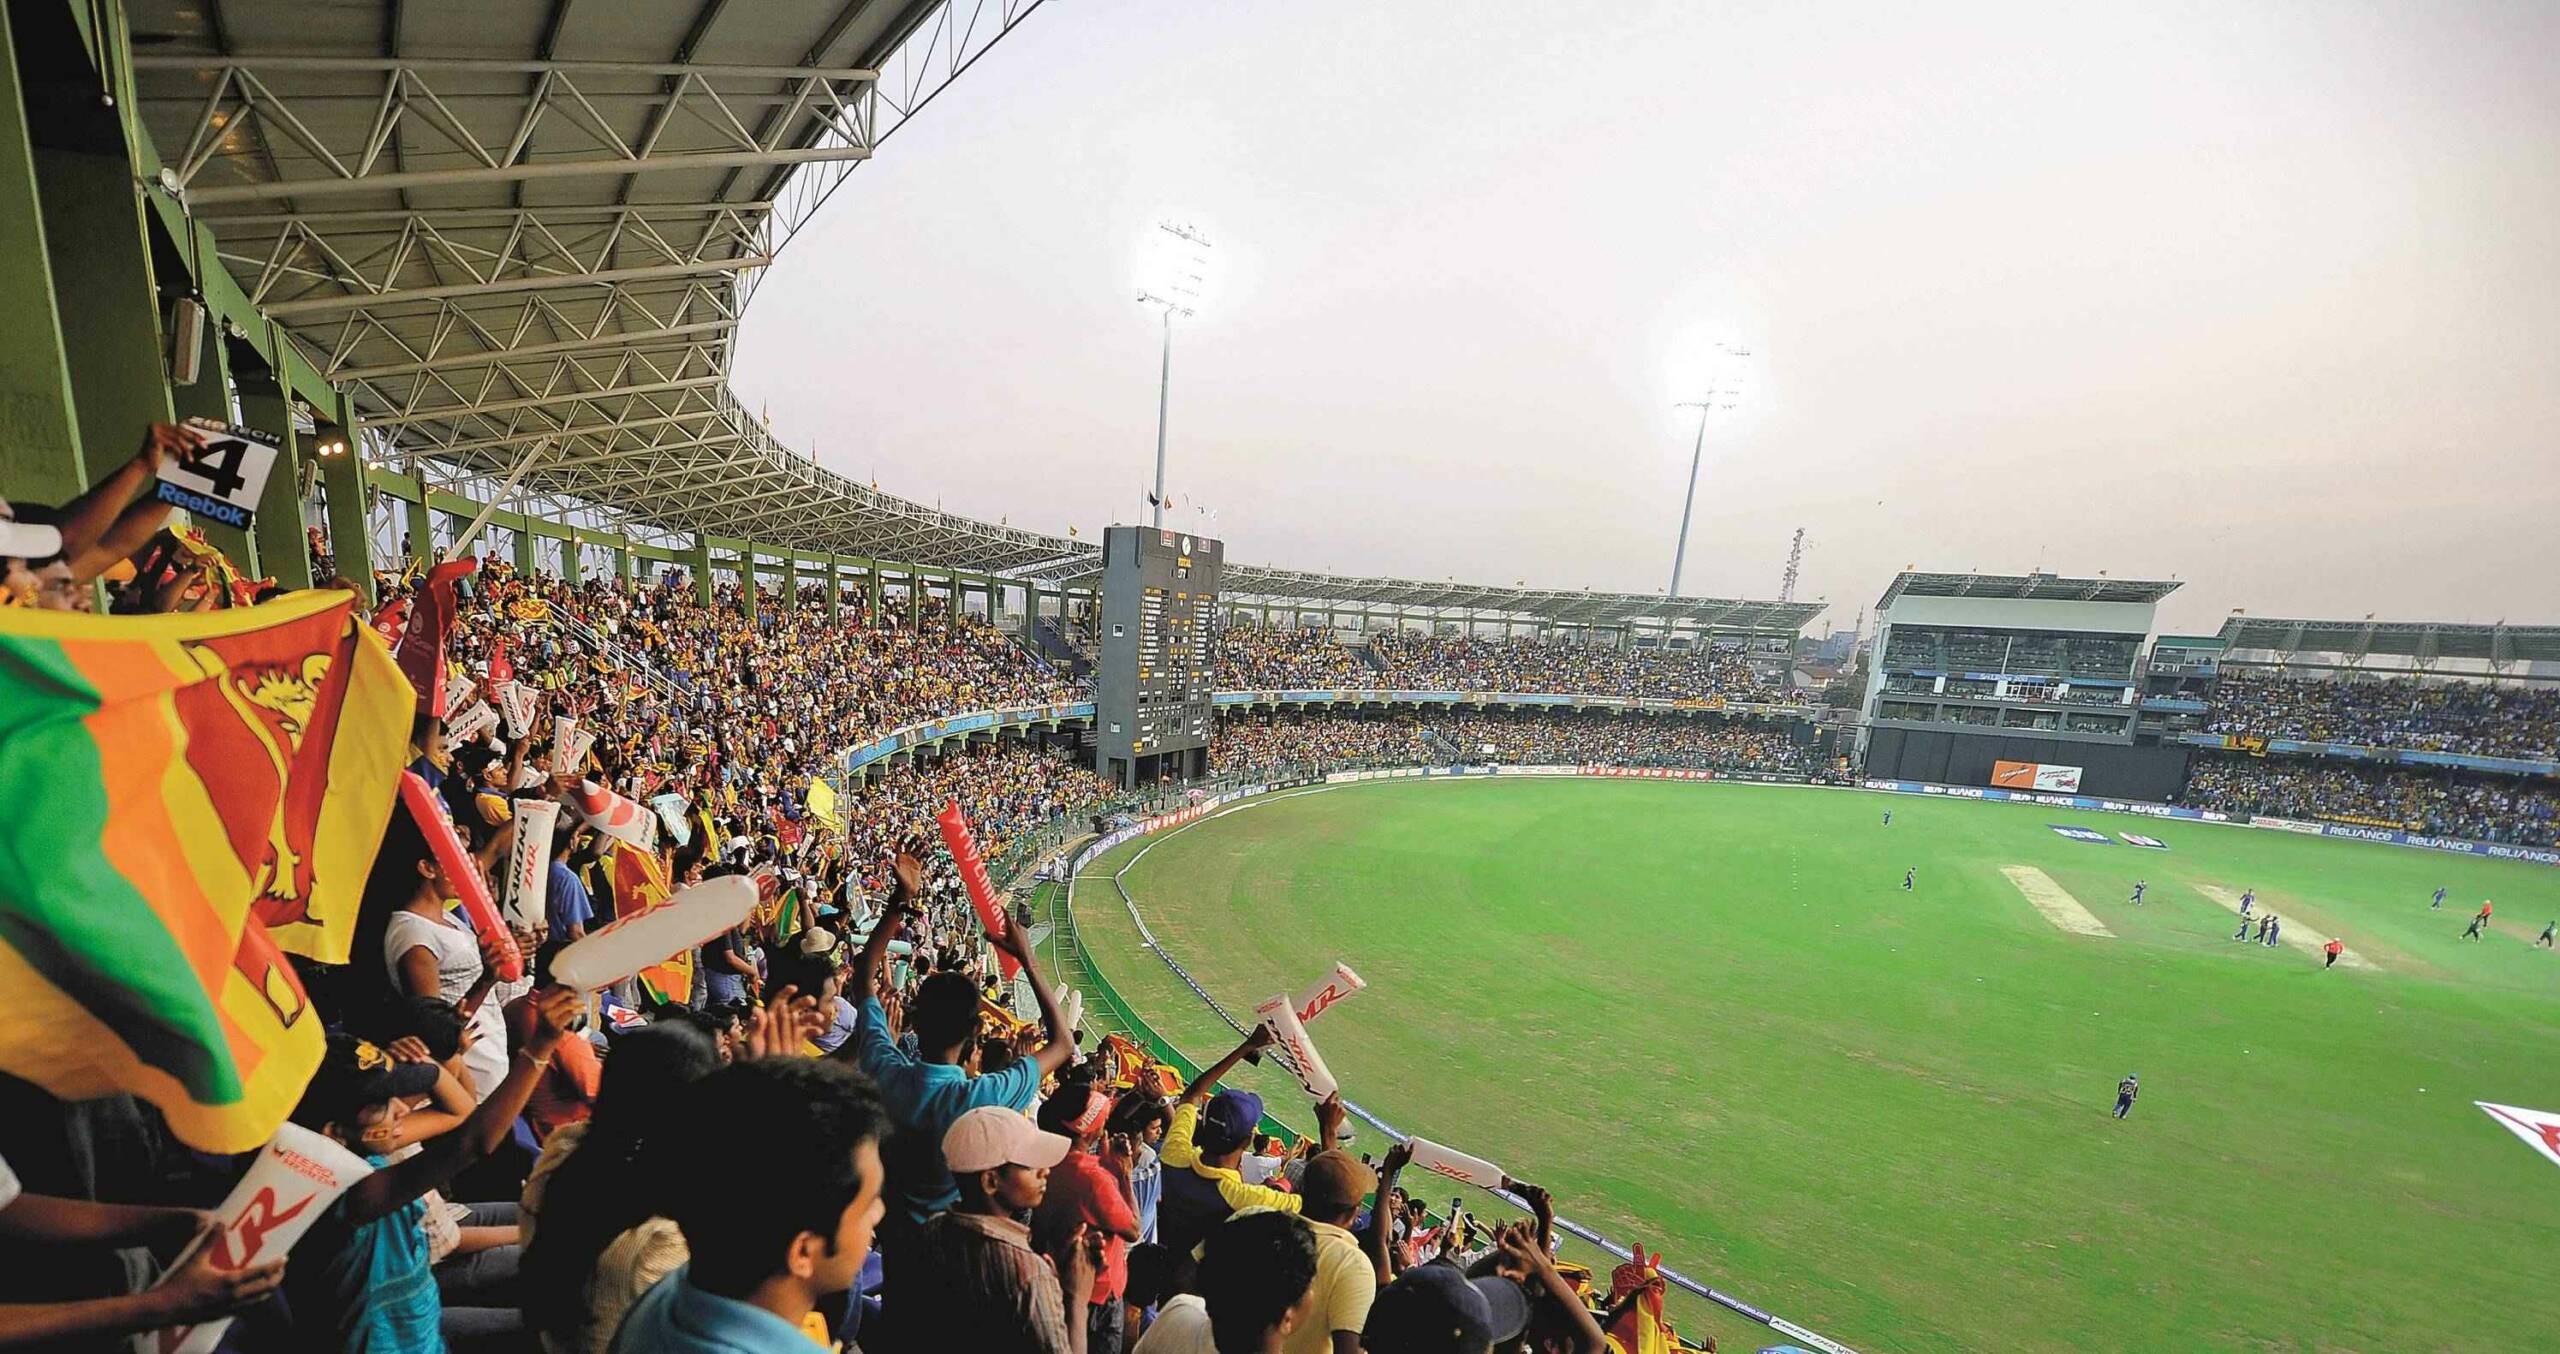 R Premadasa Stadium stands 